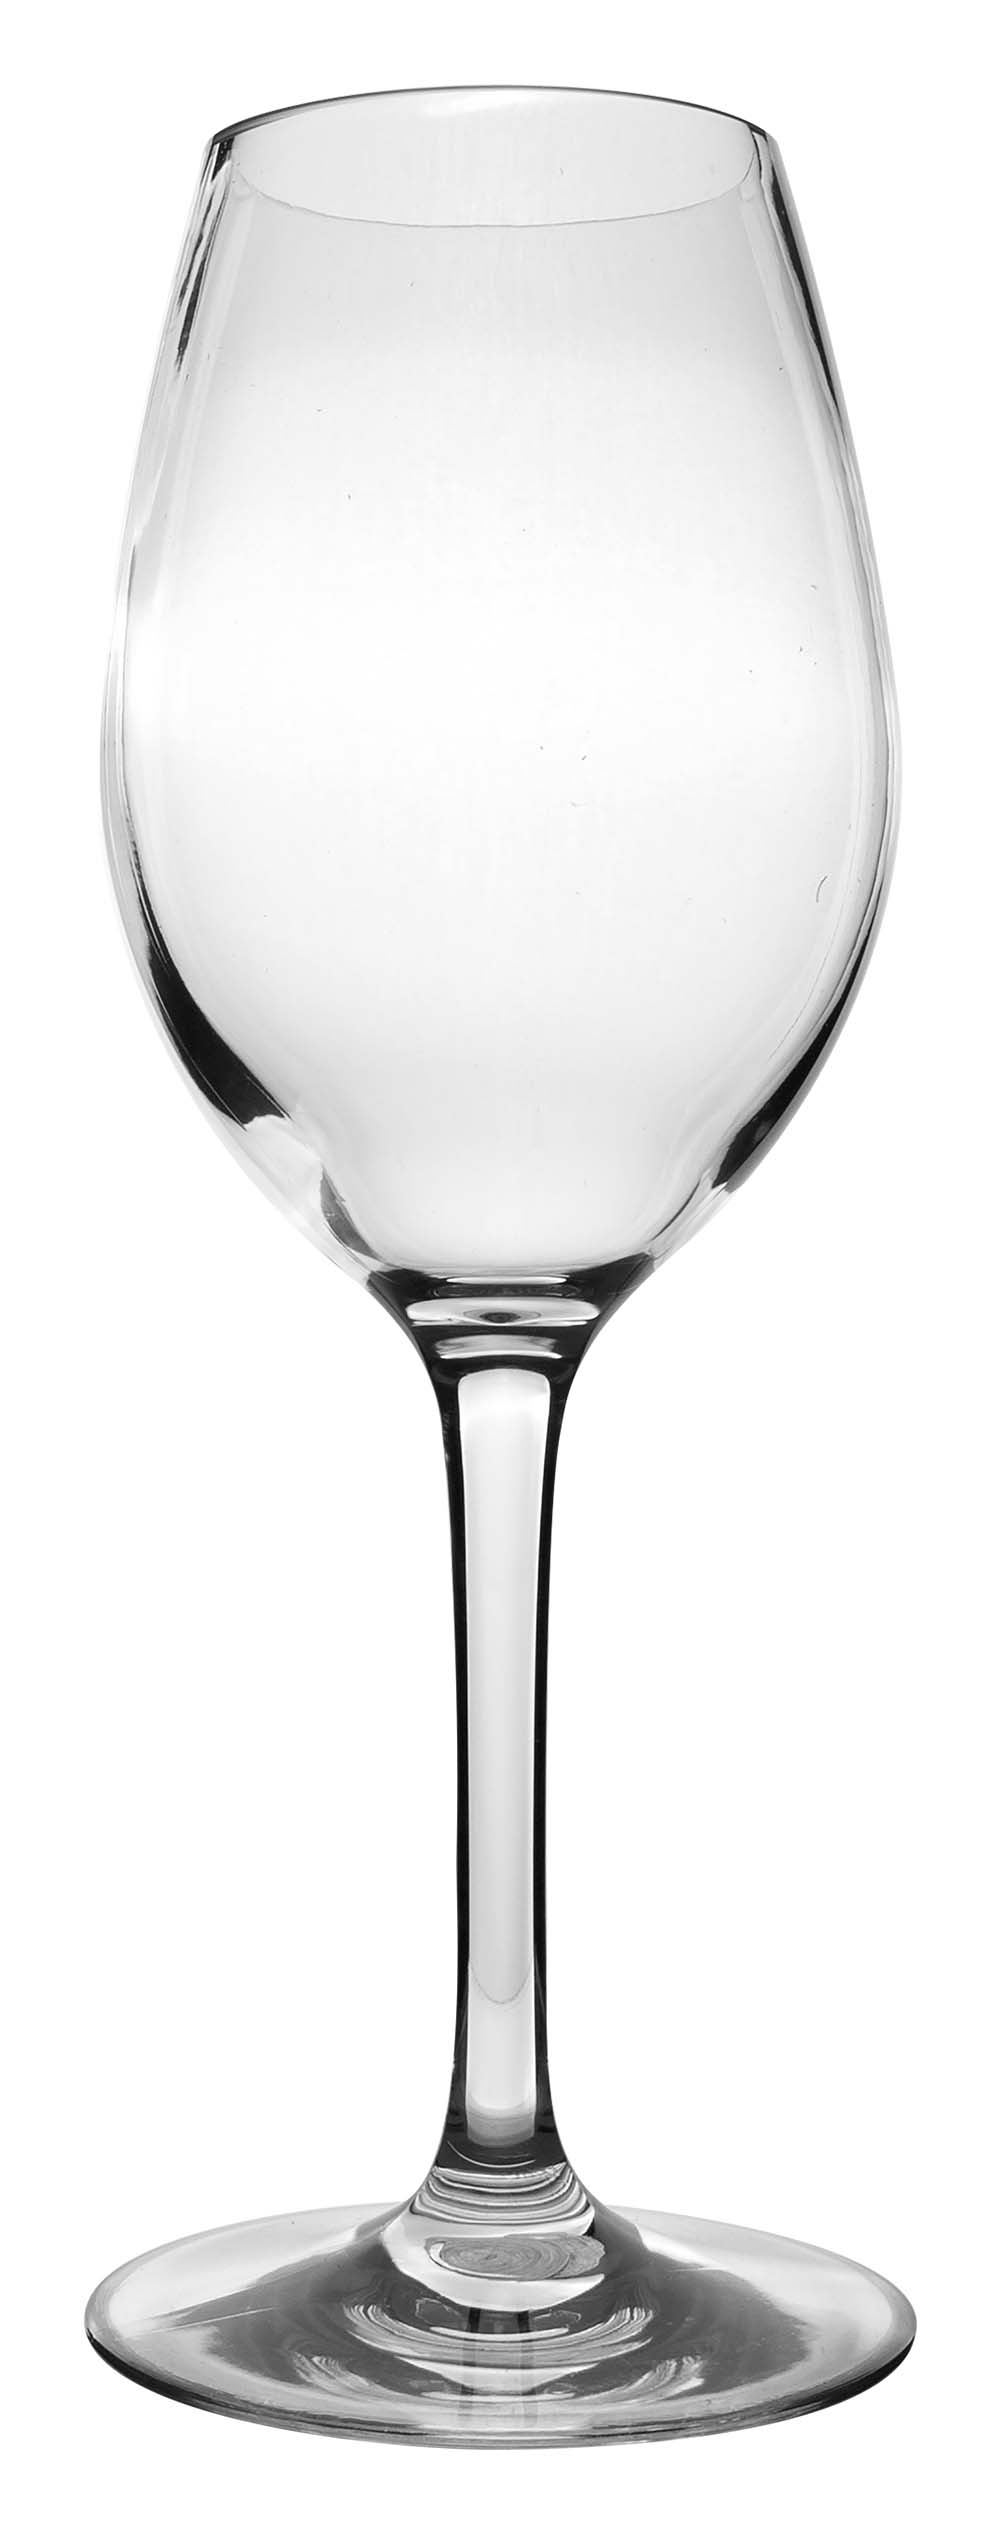 6101462 Un juego de copas de vino blanco extra resistente y elegante. Manténgase muy estable gracias al anillo de silicona antideslizante en el pie. Fabricado en tritán resistente. Como resultado, estas gafas son casi irrompibles, ligeras y resistentes a los arañazos. Además, estos vasos son aptos para lavavajillas. Embalado por 2 piezas.